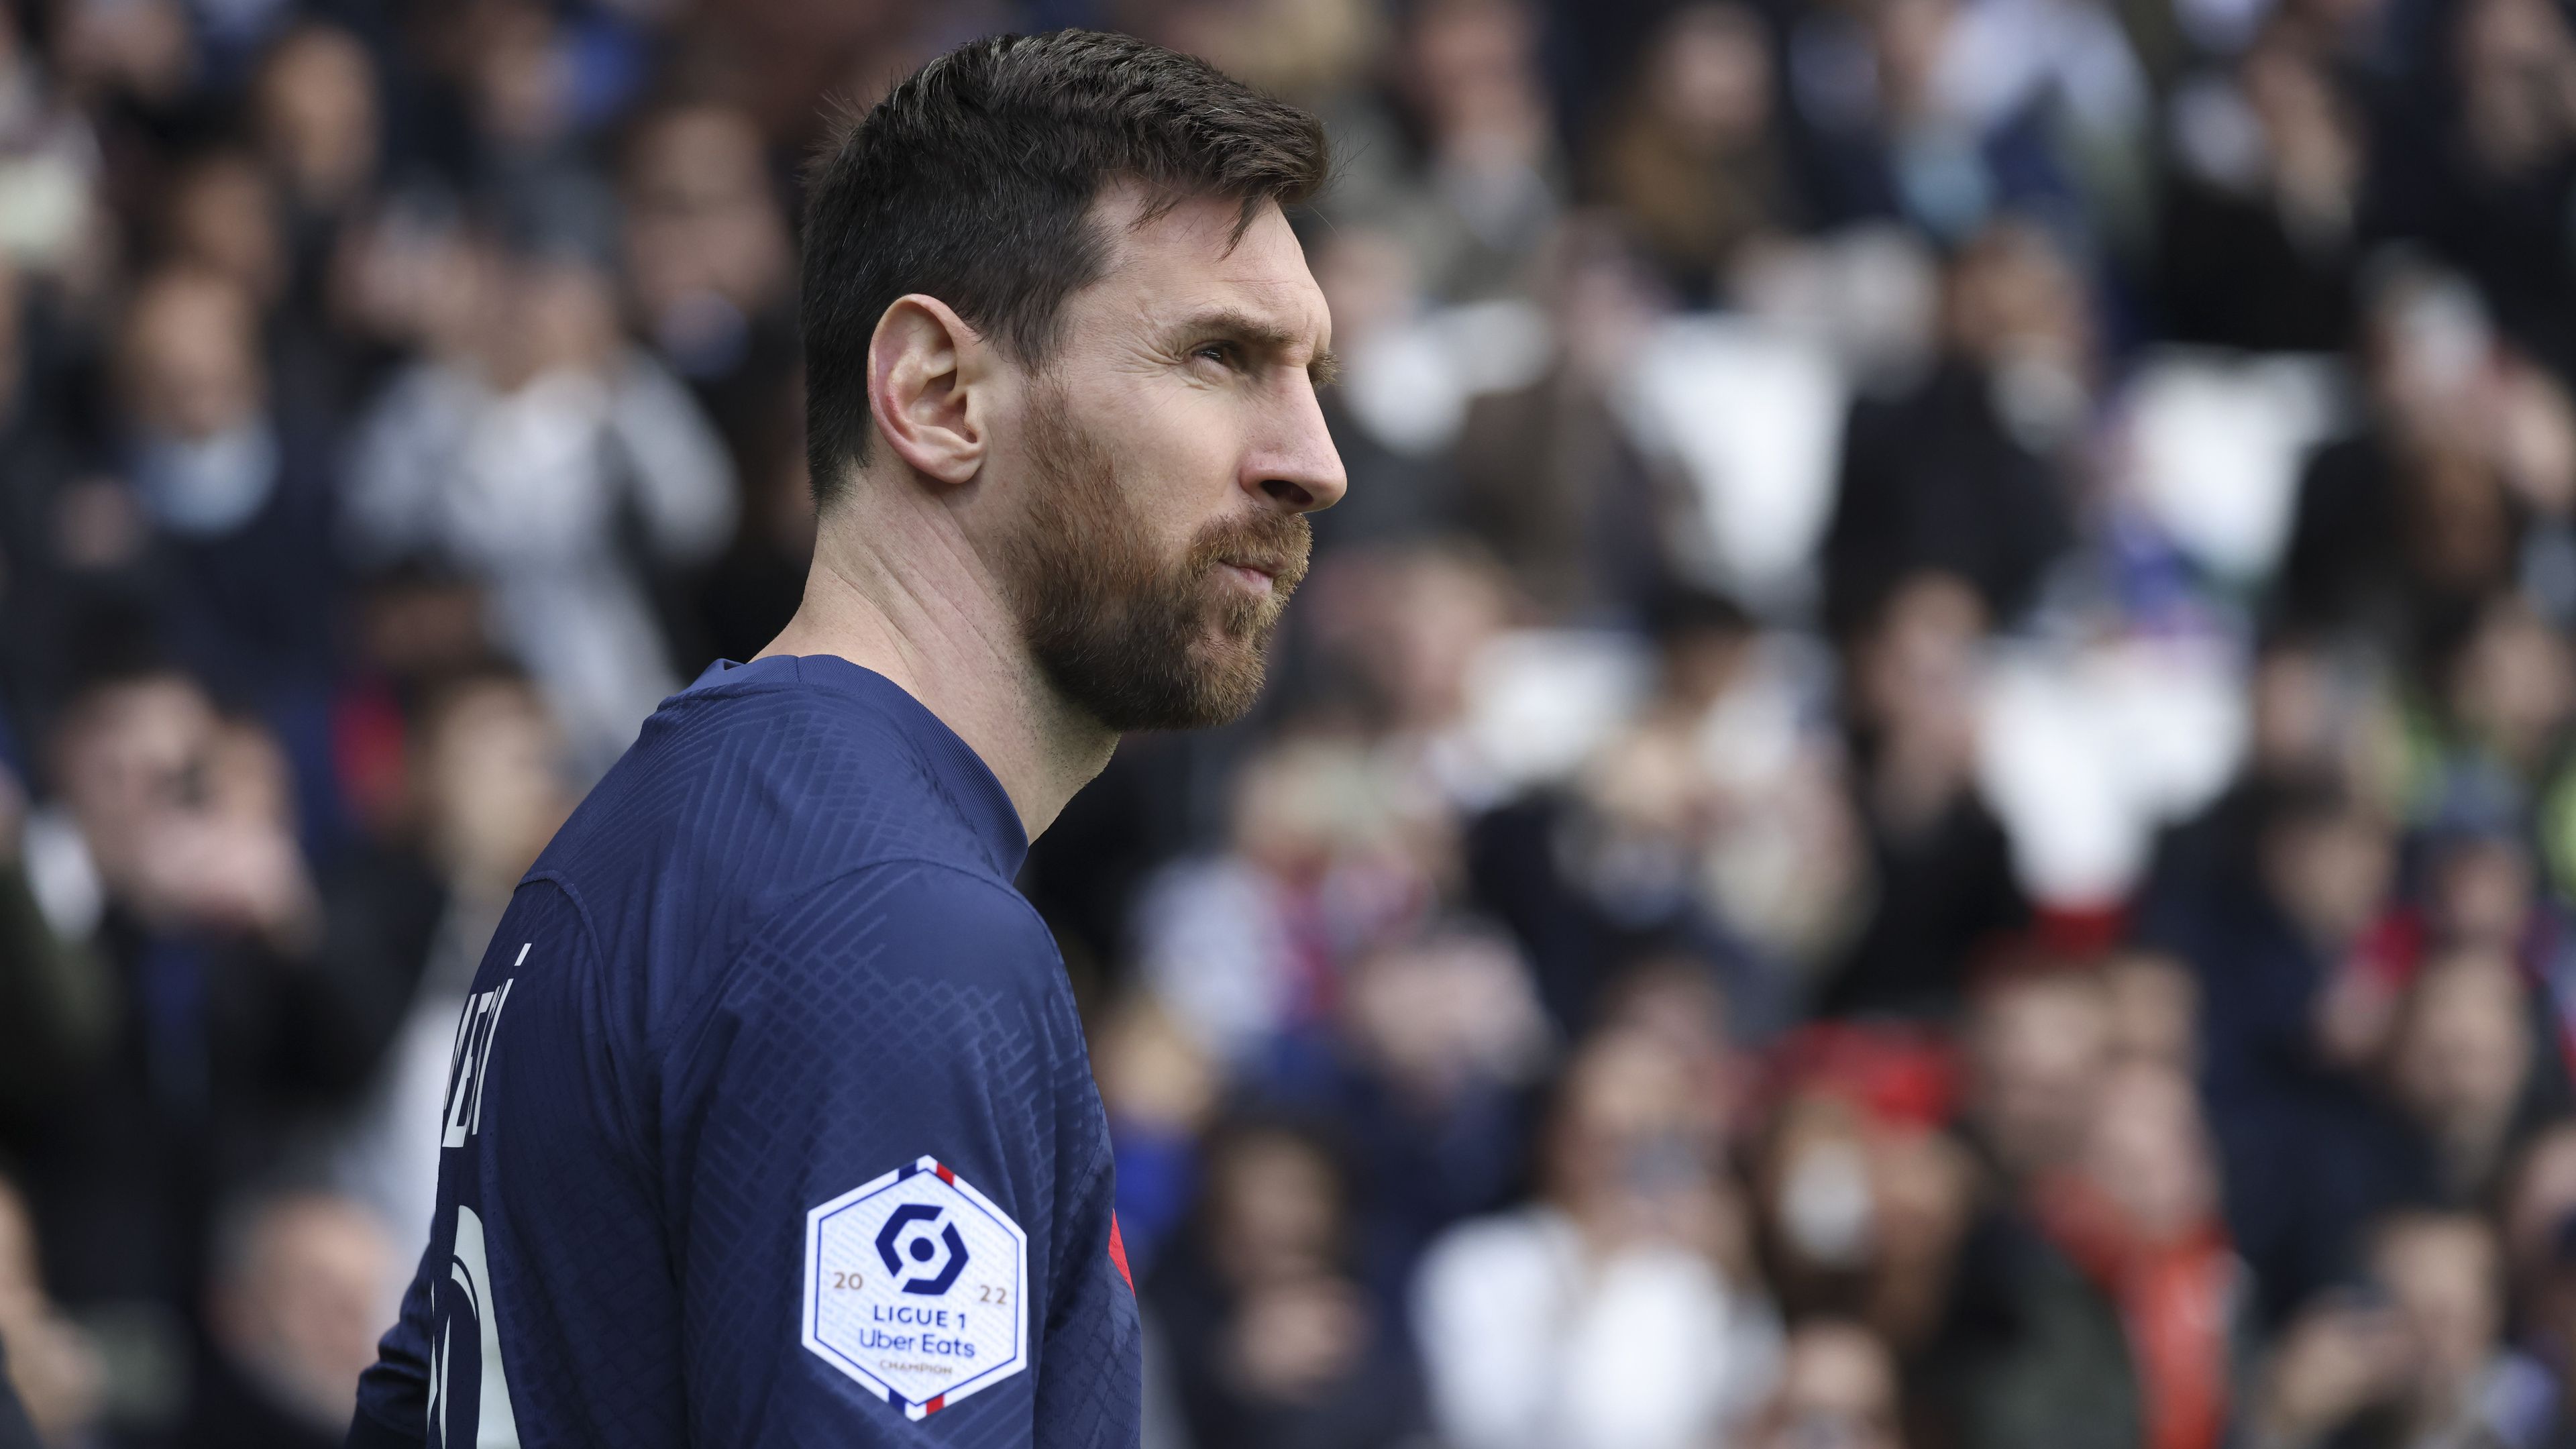 Kiakadtak Messire a csapattársai, megbüntetheti a klubja – sajtóhír